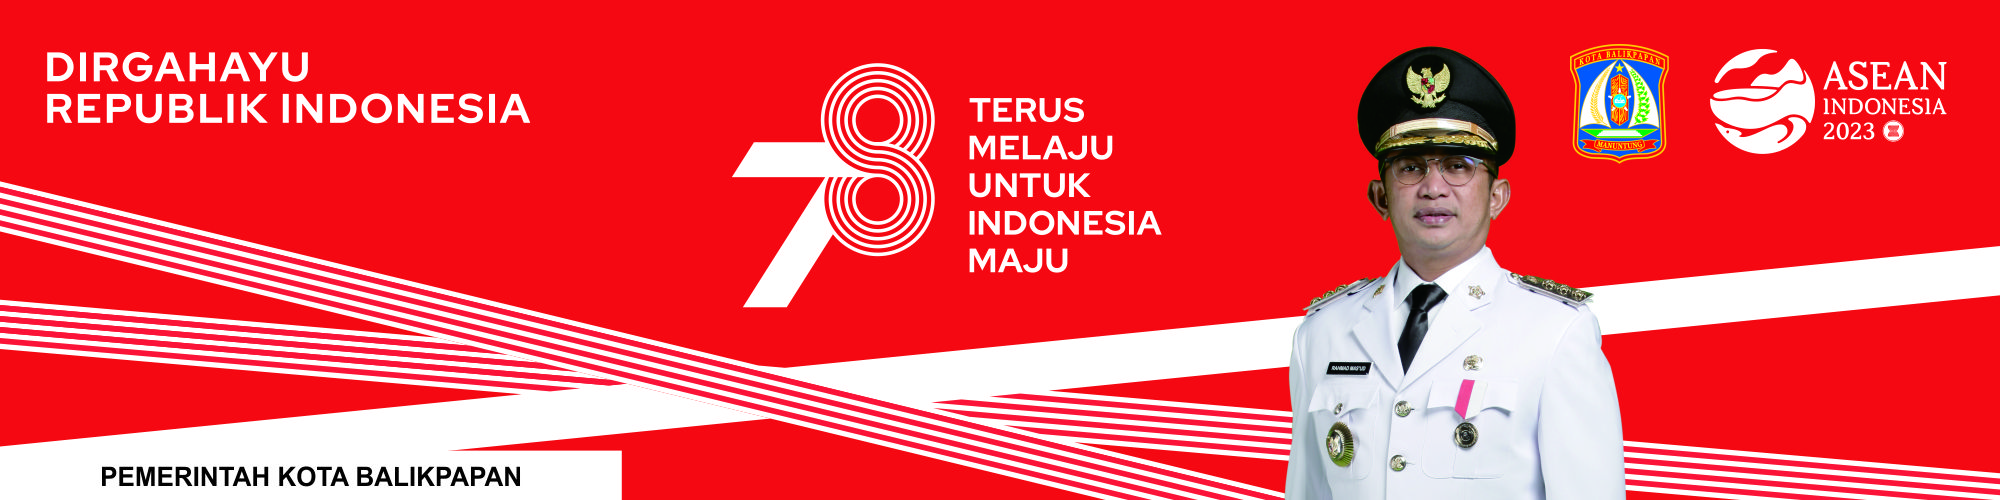 HUT INDONESIA 78